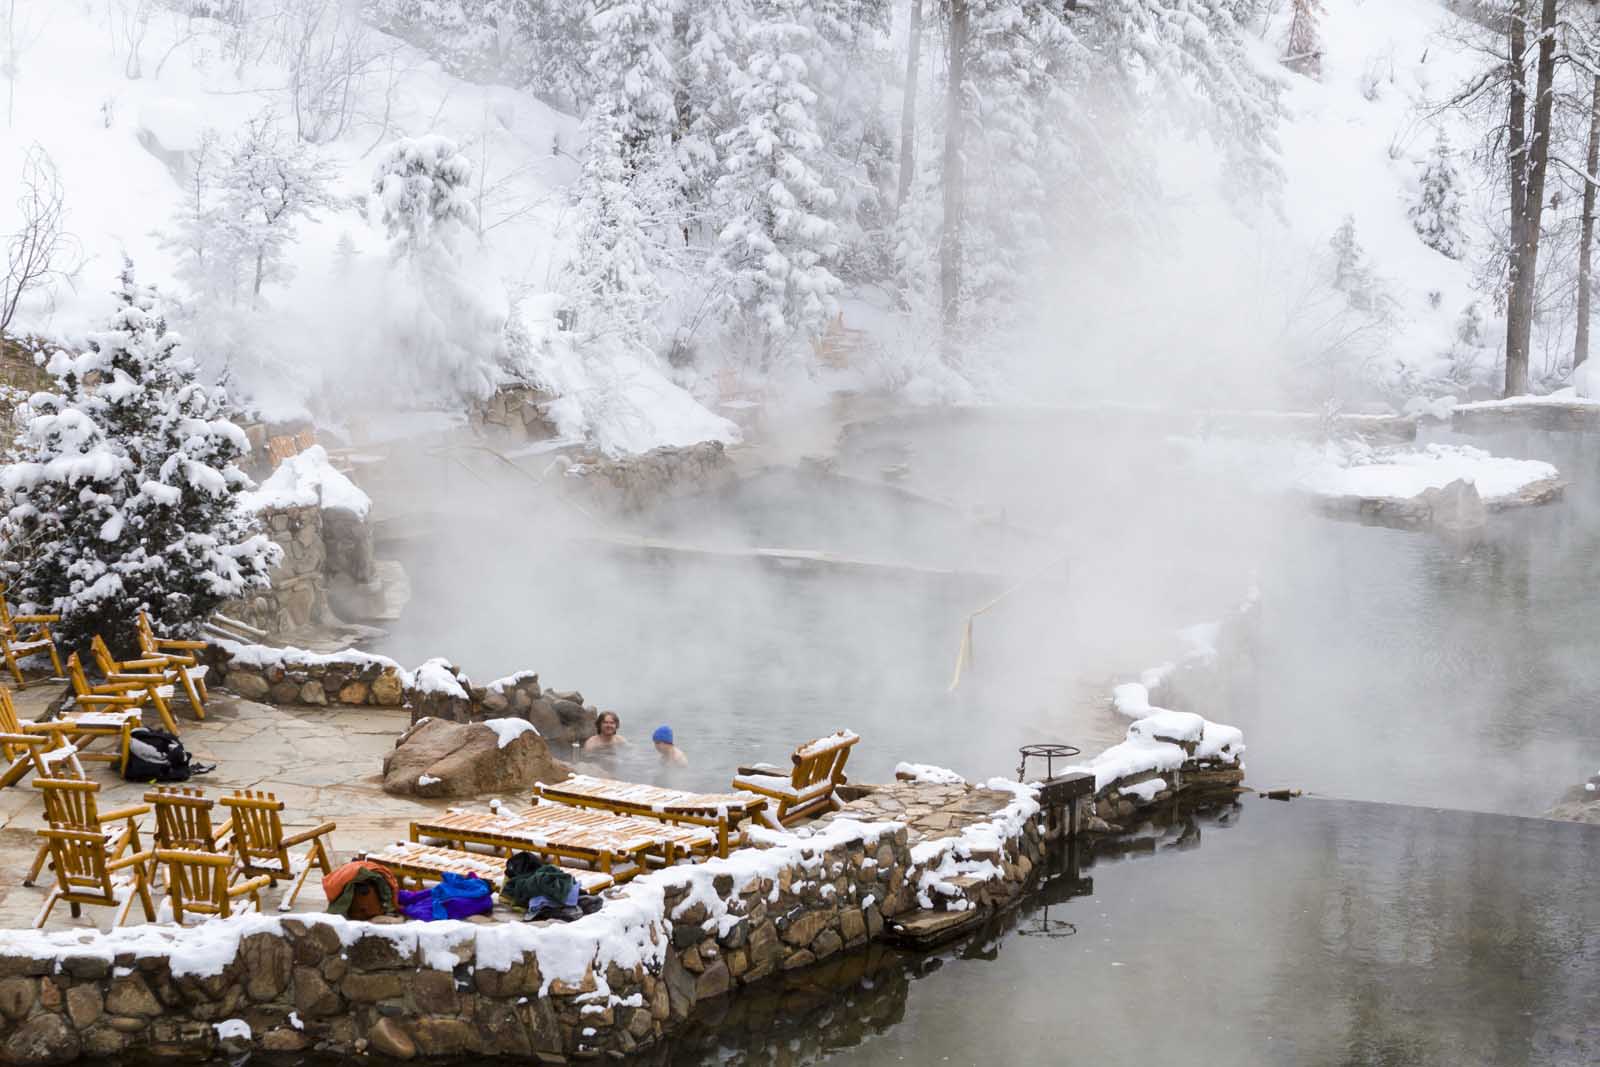 visit colorado winter activities hot springs